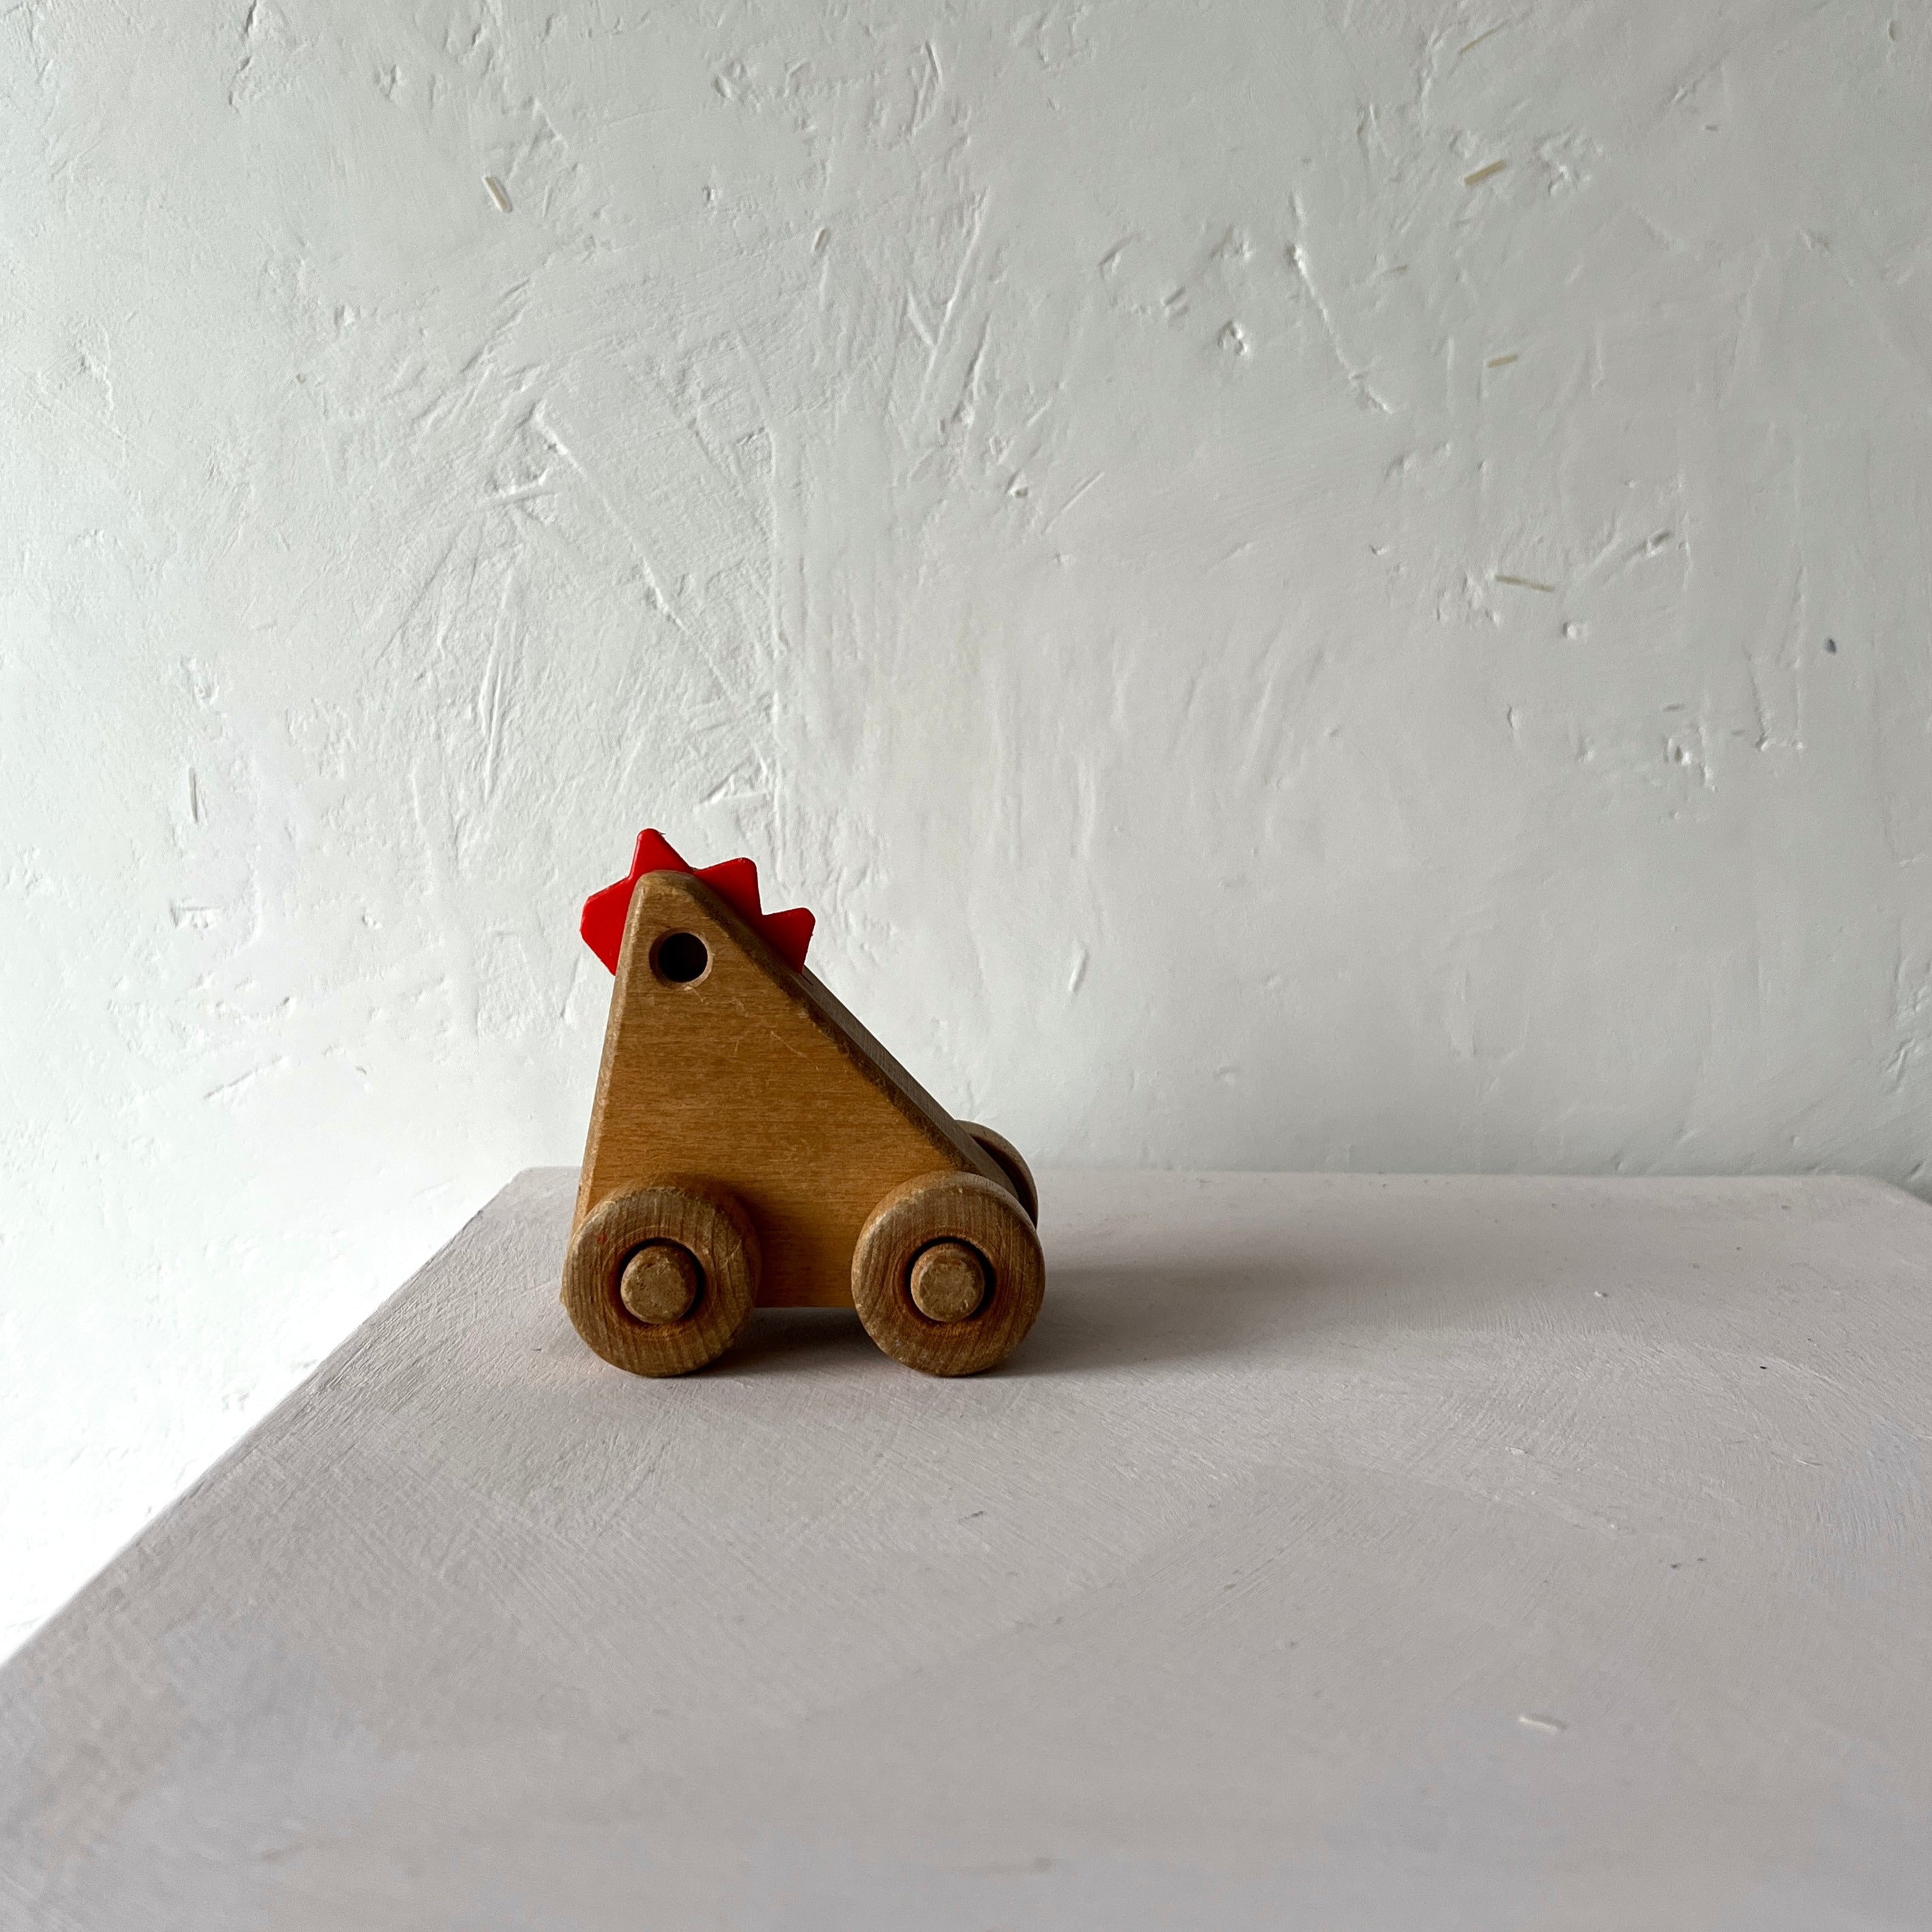 Little wooden rooster vintage